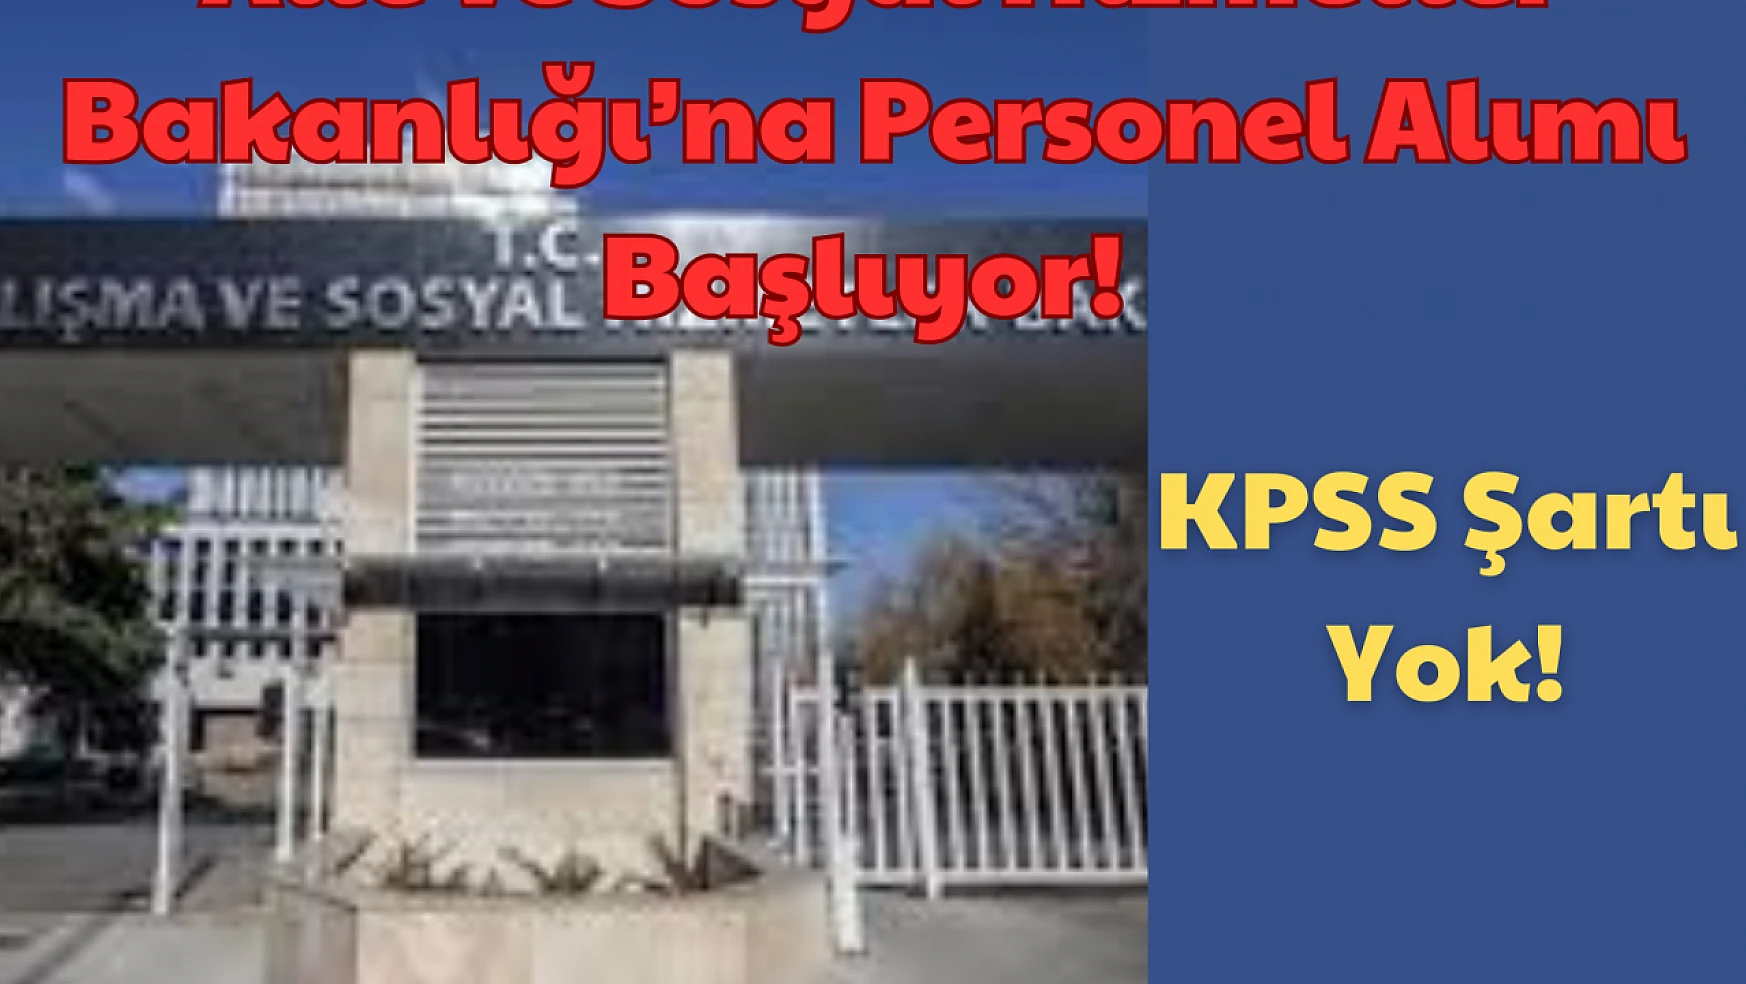 KPSS Şartı Yok: Aile ve Sosyal Hizmetler Bakanlığı'na Personel Alımı Başlıyor!